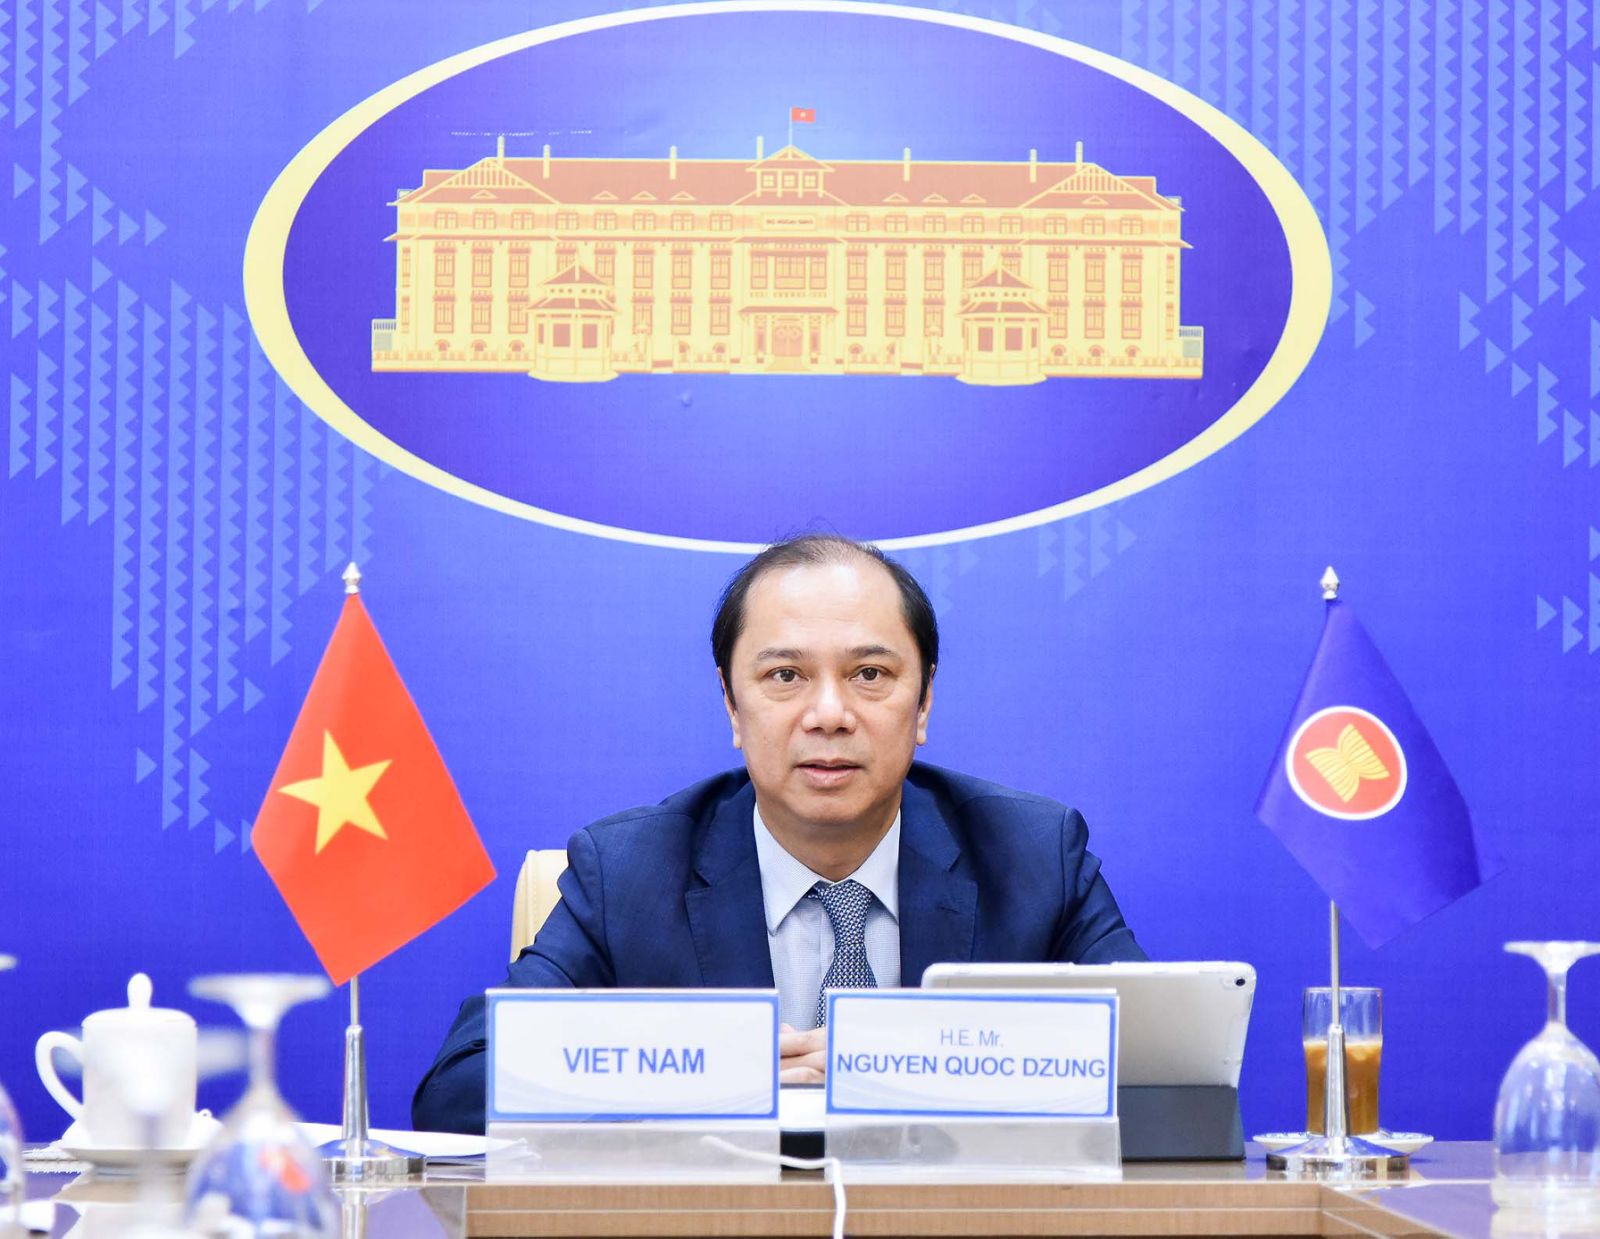 Thứ trưởng Nguyễn Quốc Dũng phát biểu tại Hội nghị